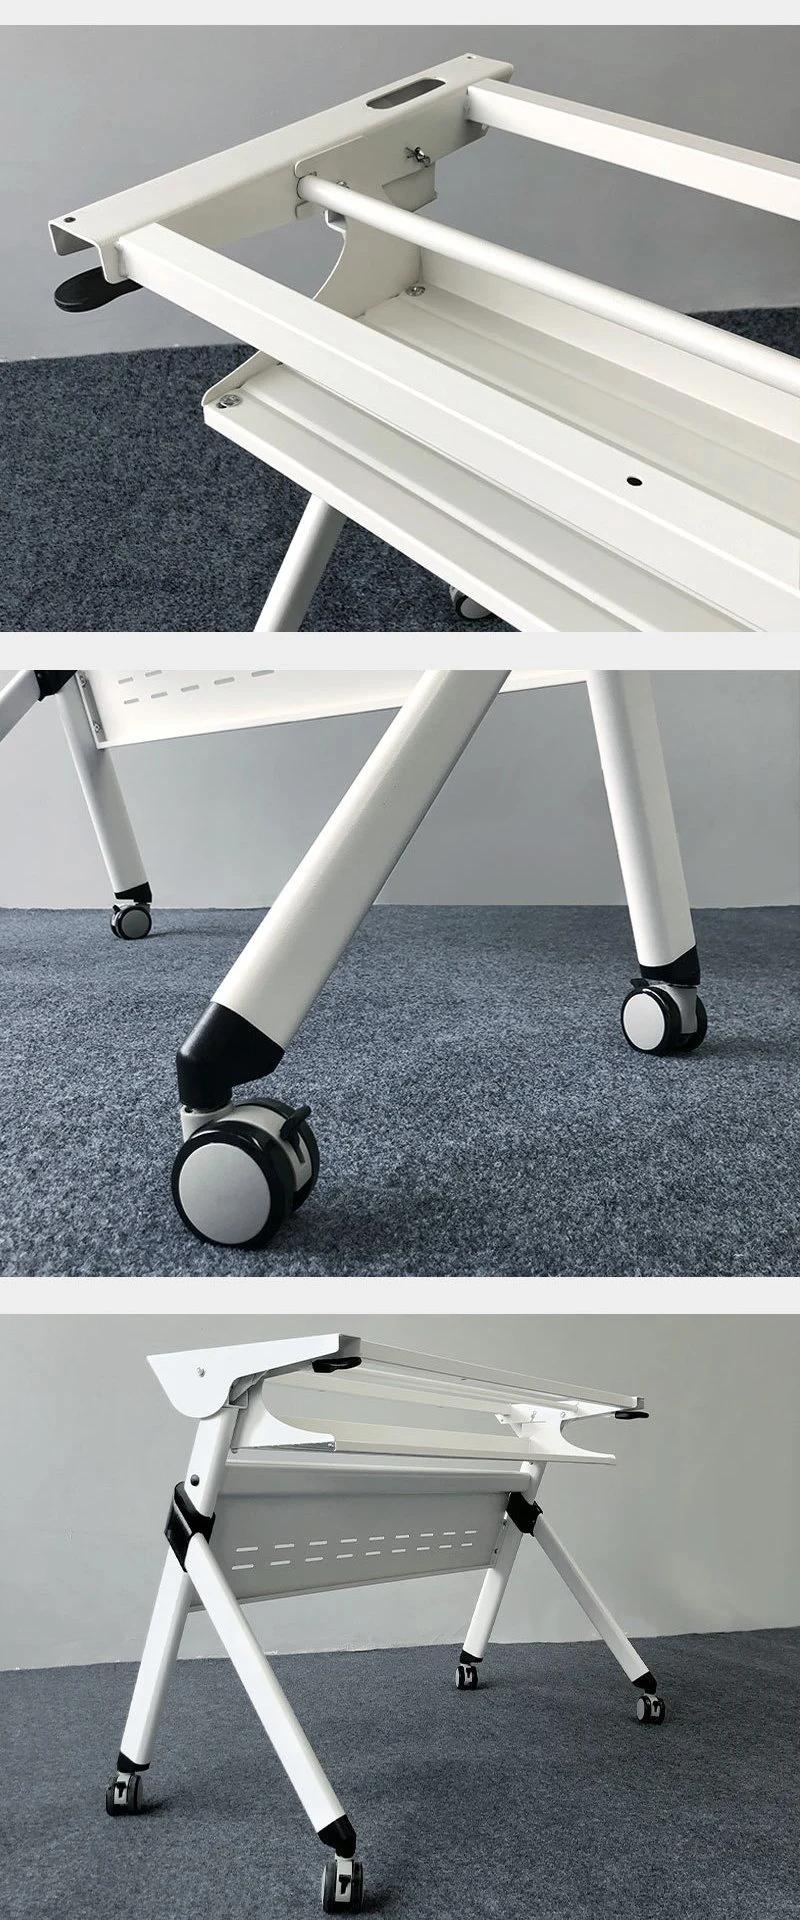 Modern Design Training Meeting Table Office Furniture Conference Desk Adjustable Desk Office Desk